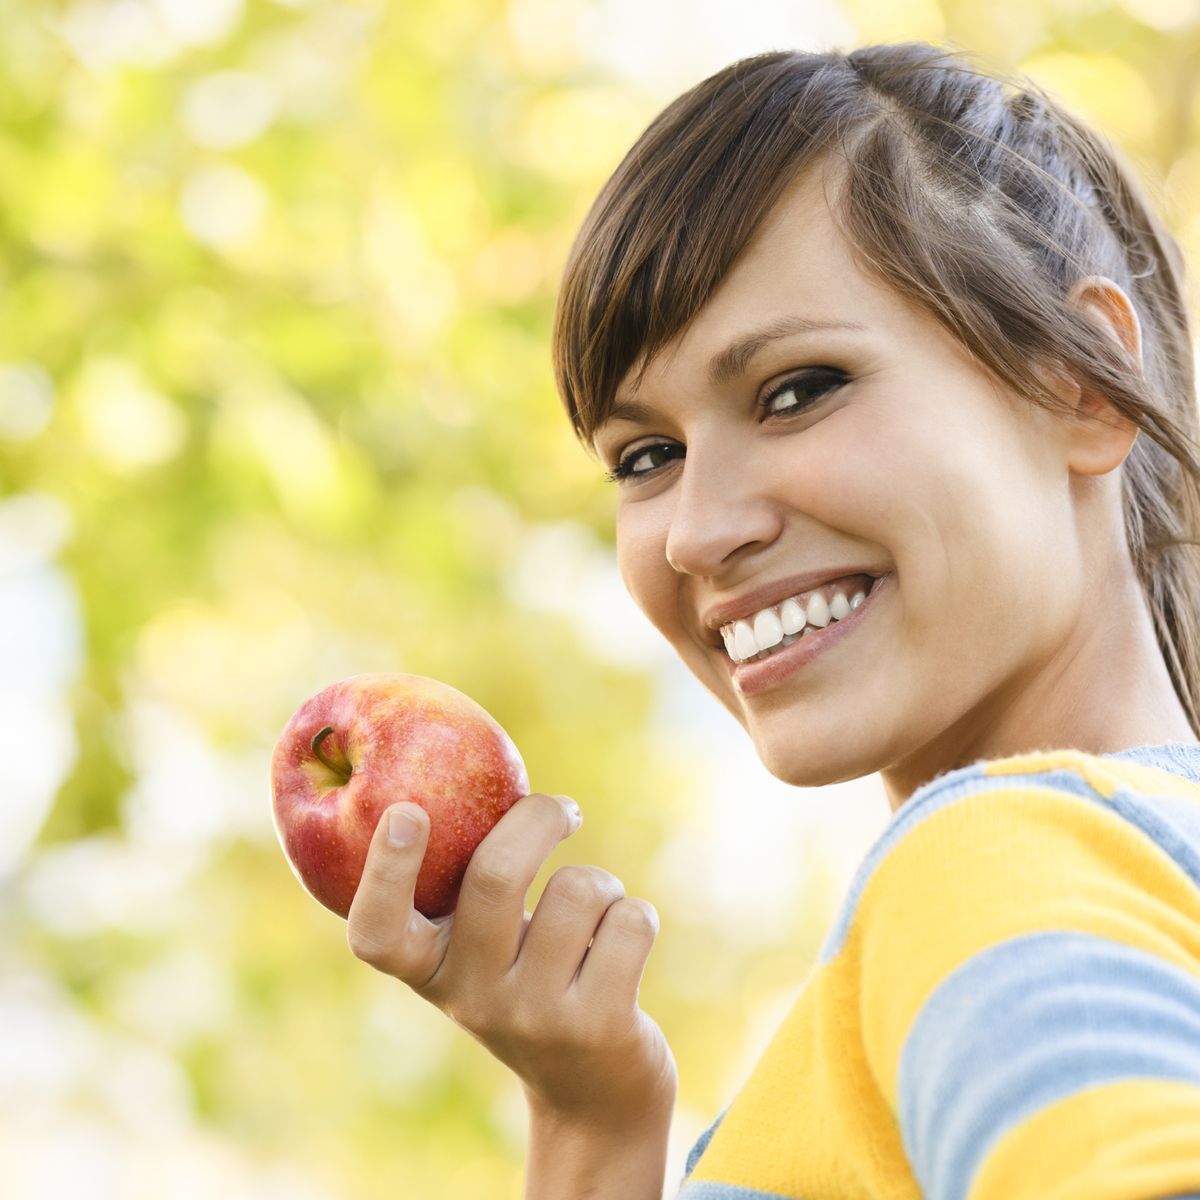 Las seis dietas más efectivas para bajar peso y adelgazar de forma saludable